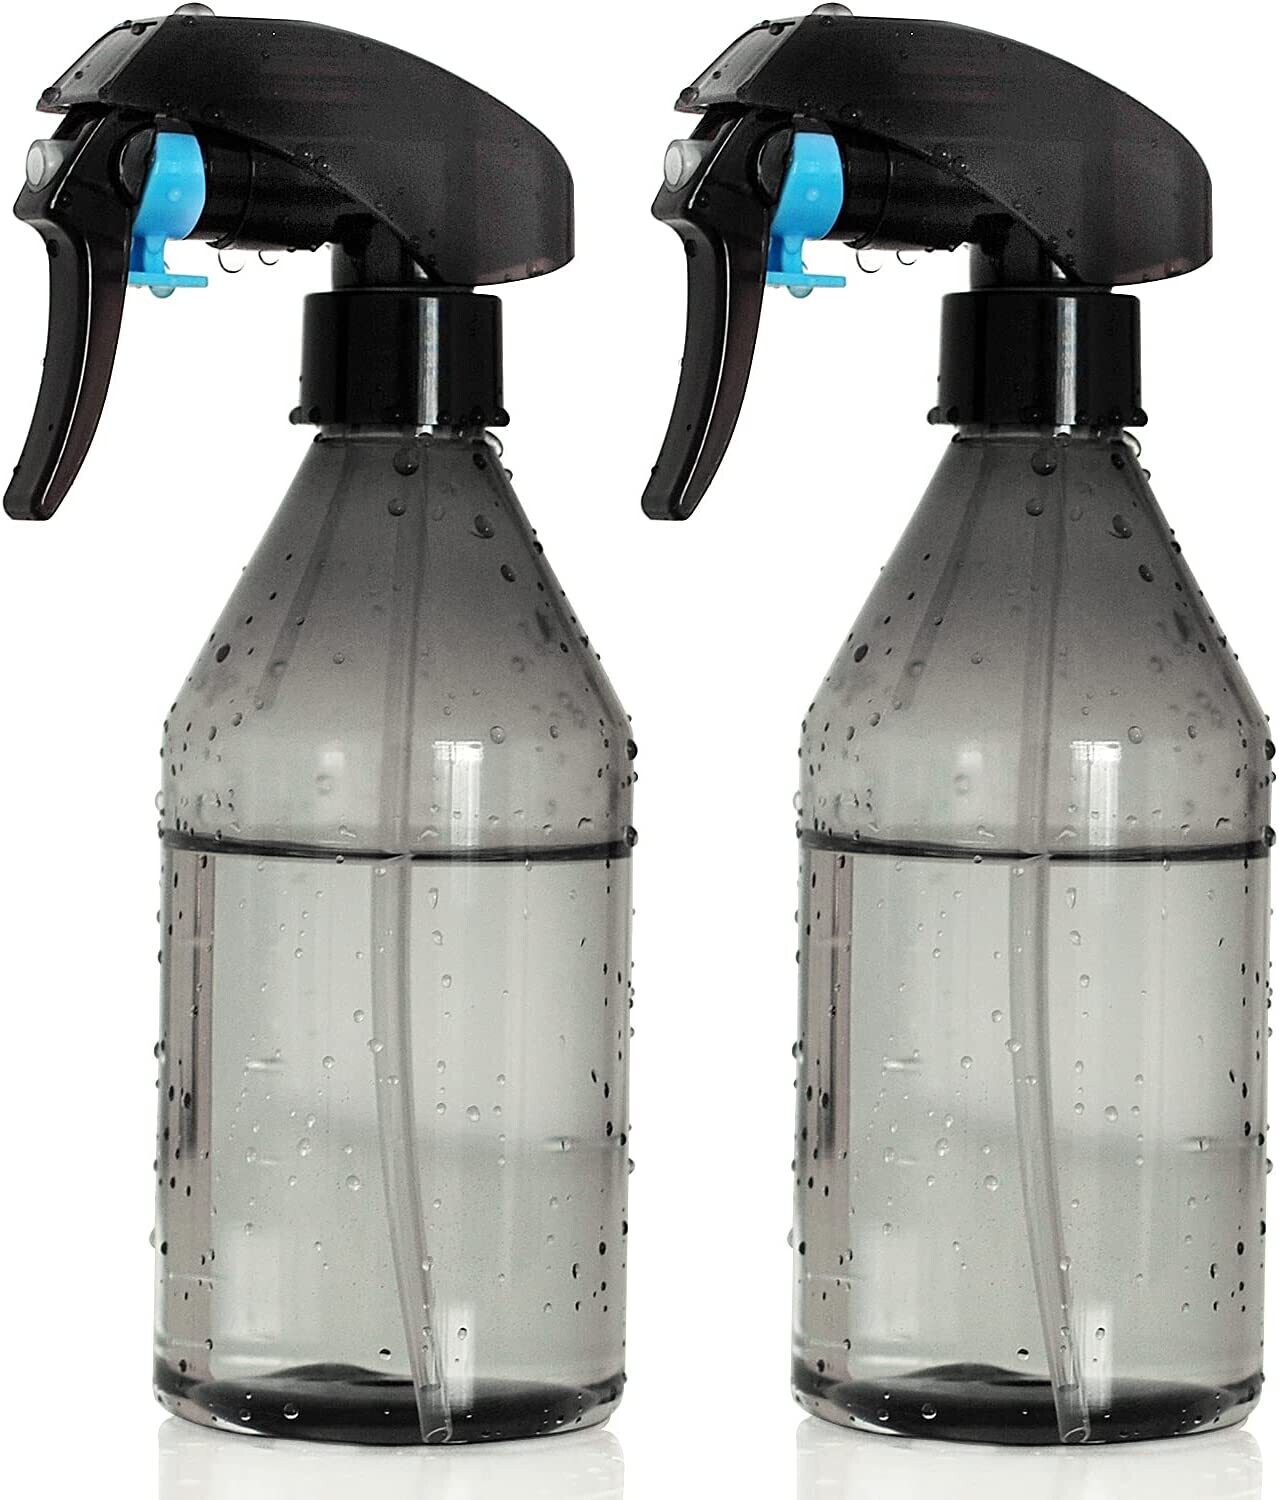 AORAKI Plant Mister Water Spray Bottle - Fine Mist Spray Bottle for Flowers, Plants, Gardening, Cleaning Solutions - 10oz [2 PACK]